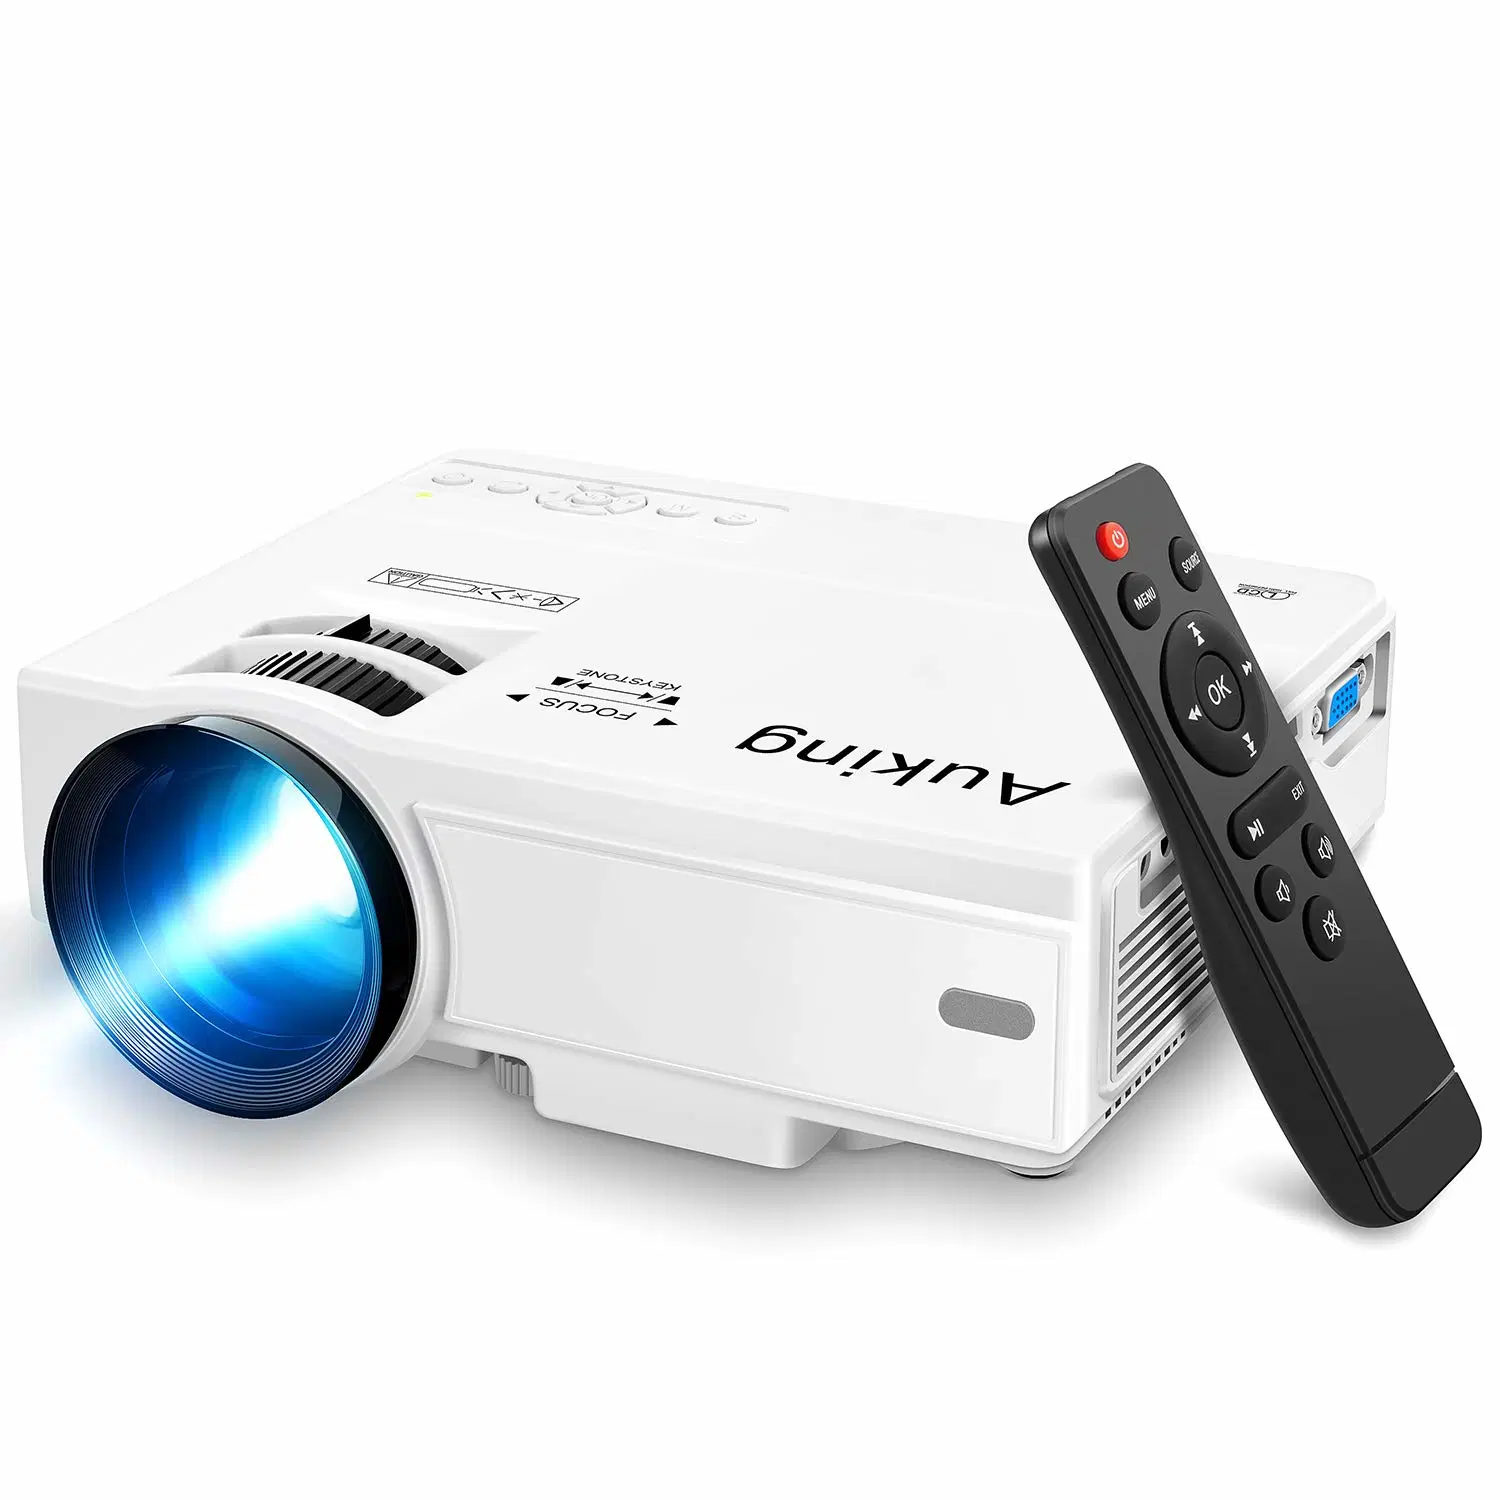 Projecteur Auking, mini projecteur 2023 mis à niveau, projecteur vidéo Home Cinéma multimédia 9500 lumens, compatible avec HDMI 1080P Full HD, USB, VGA, AV, Smartphon